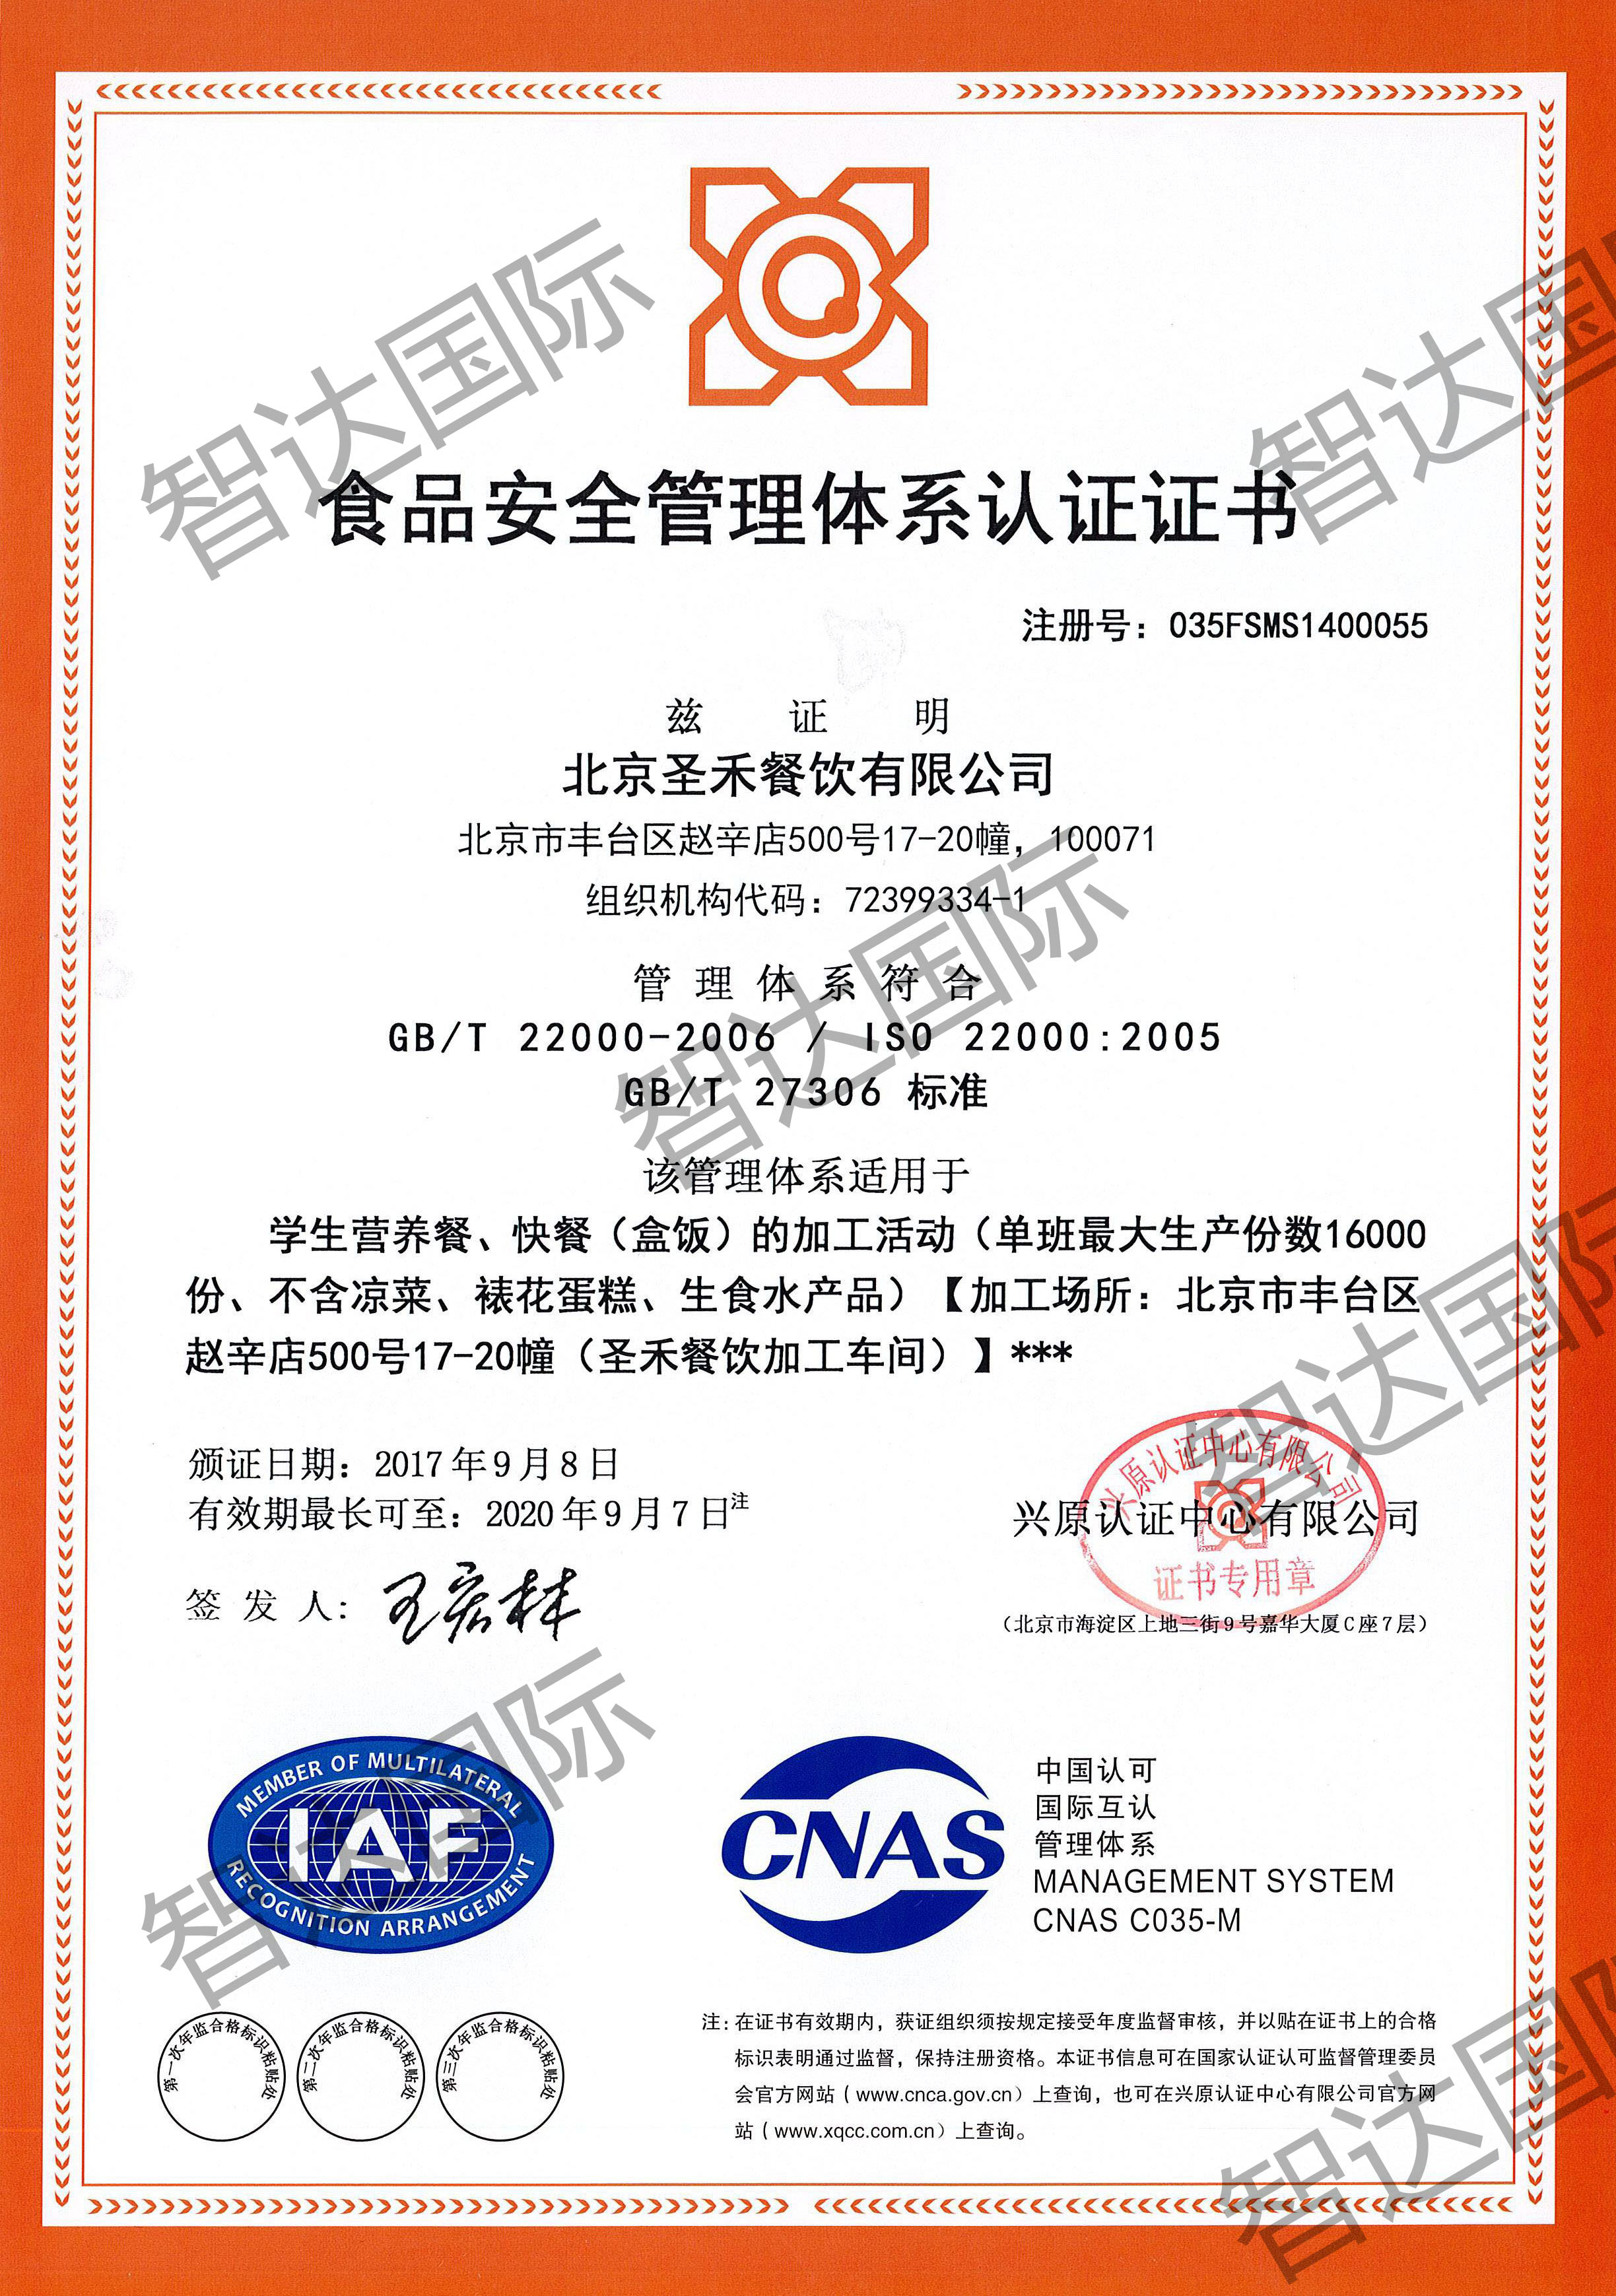 祝贺：北京圣禾餐饮有限公司通过ISO22000体系认证